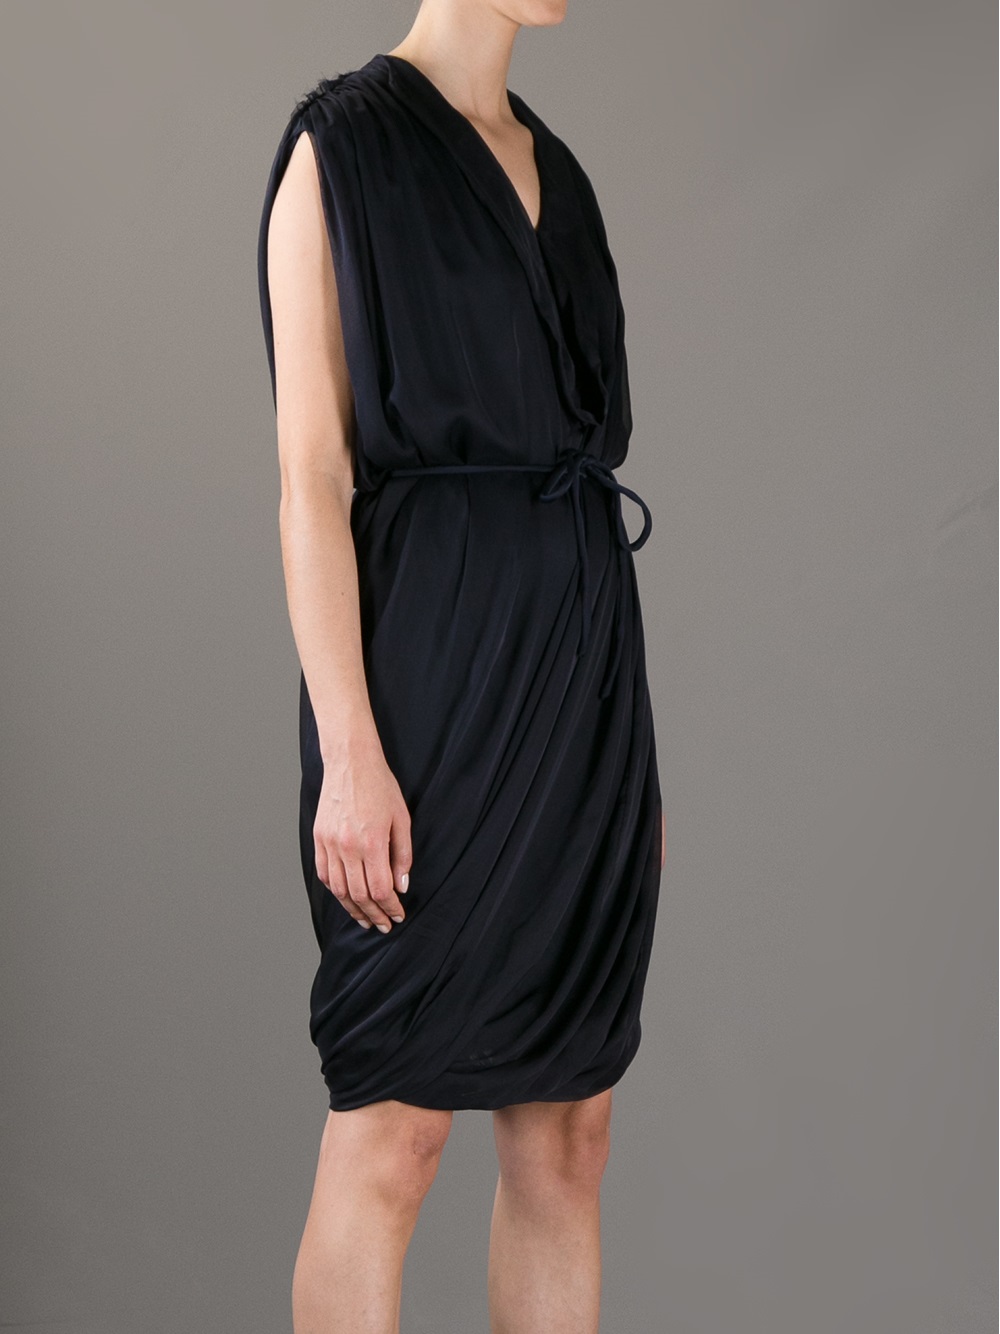 Lanvin Belted Dress in Black - Lyst